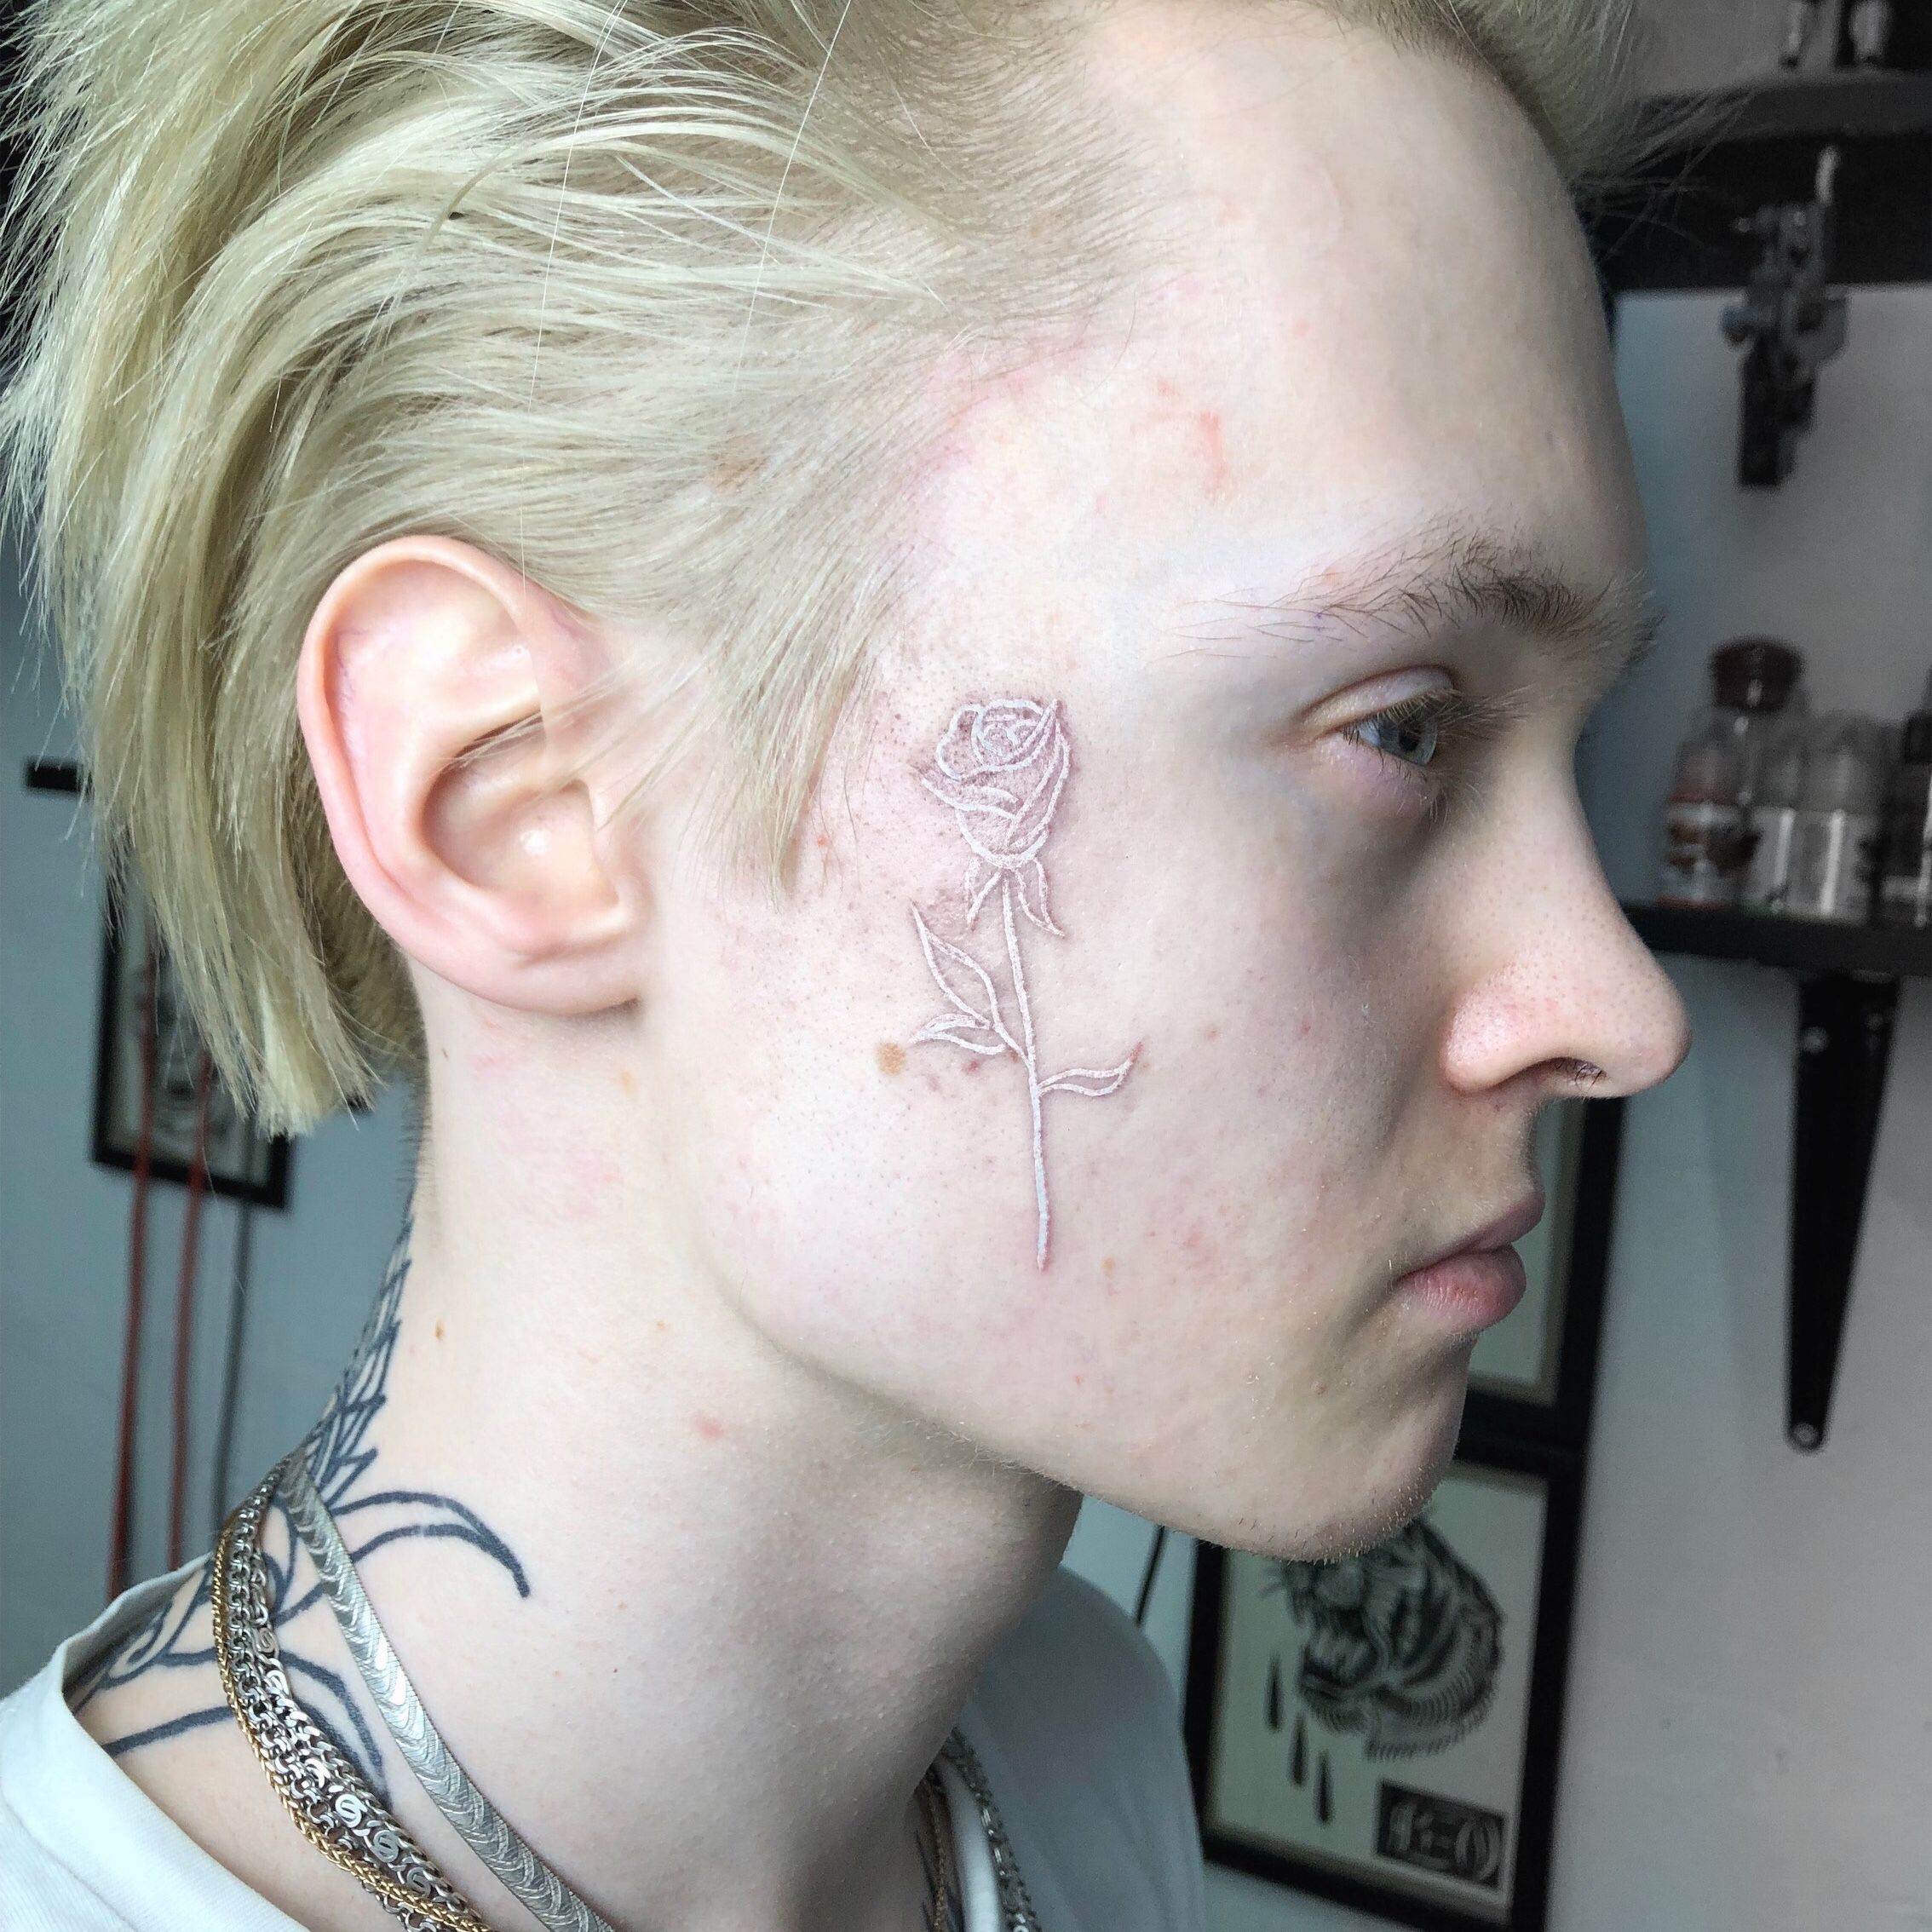 Slick Woods Reveals White Ink Face Tattoo  CafeMomcom